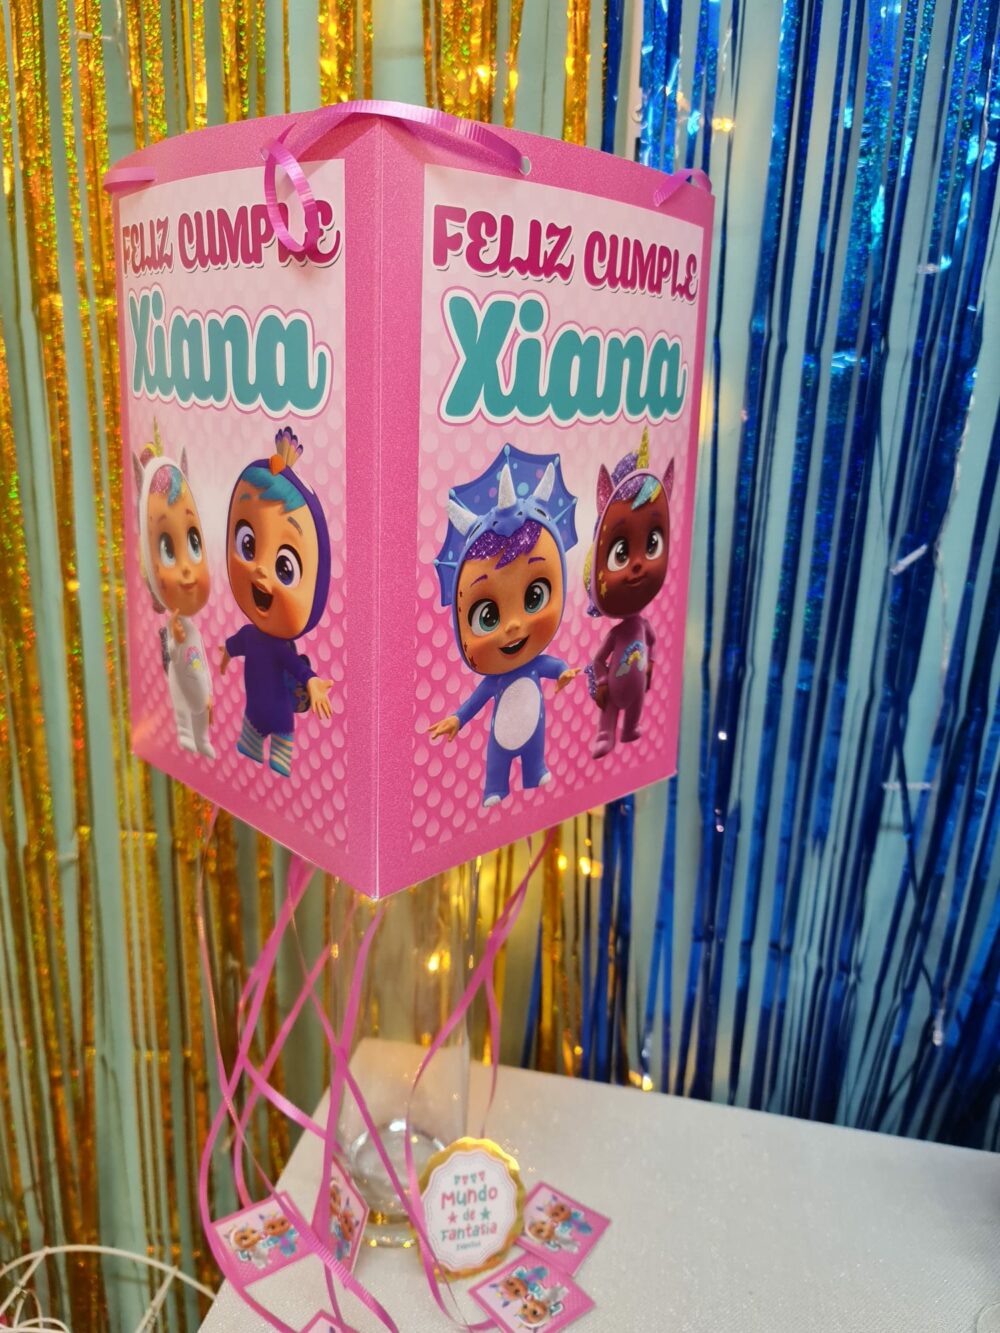 Piñata Cumpleaños Personalizadas - Mundo de Fantasia Eventos